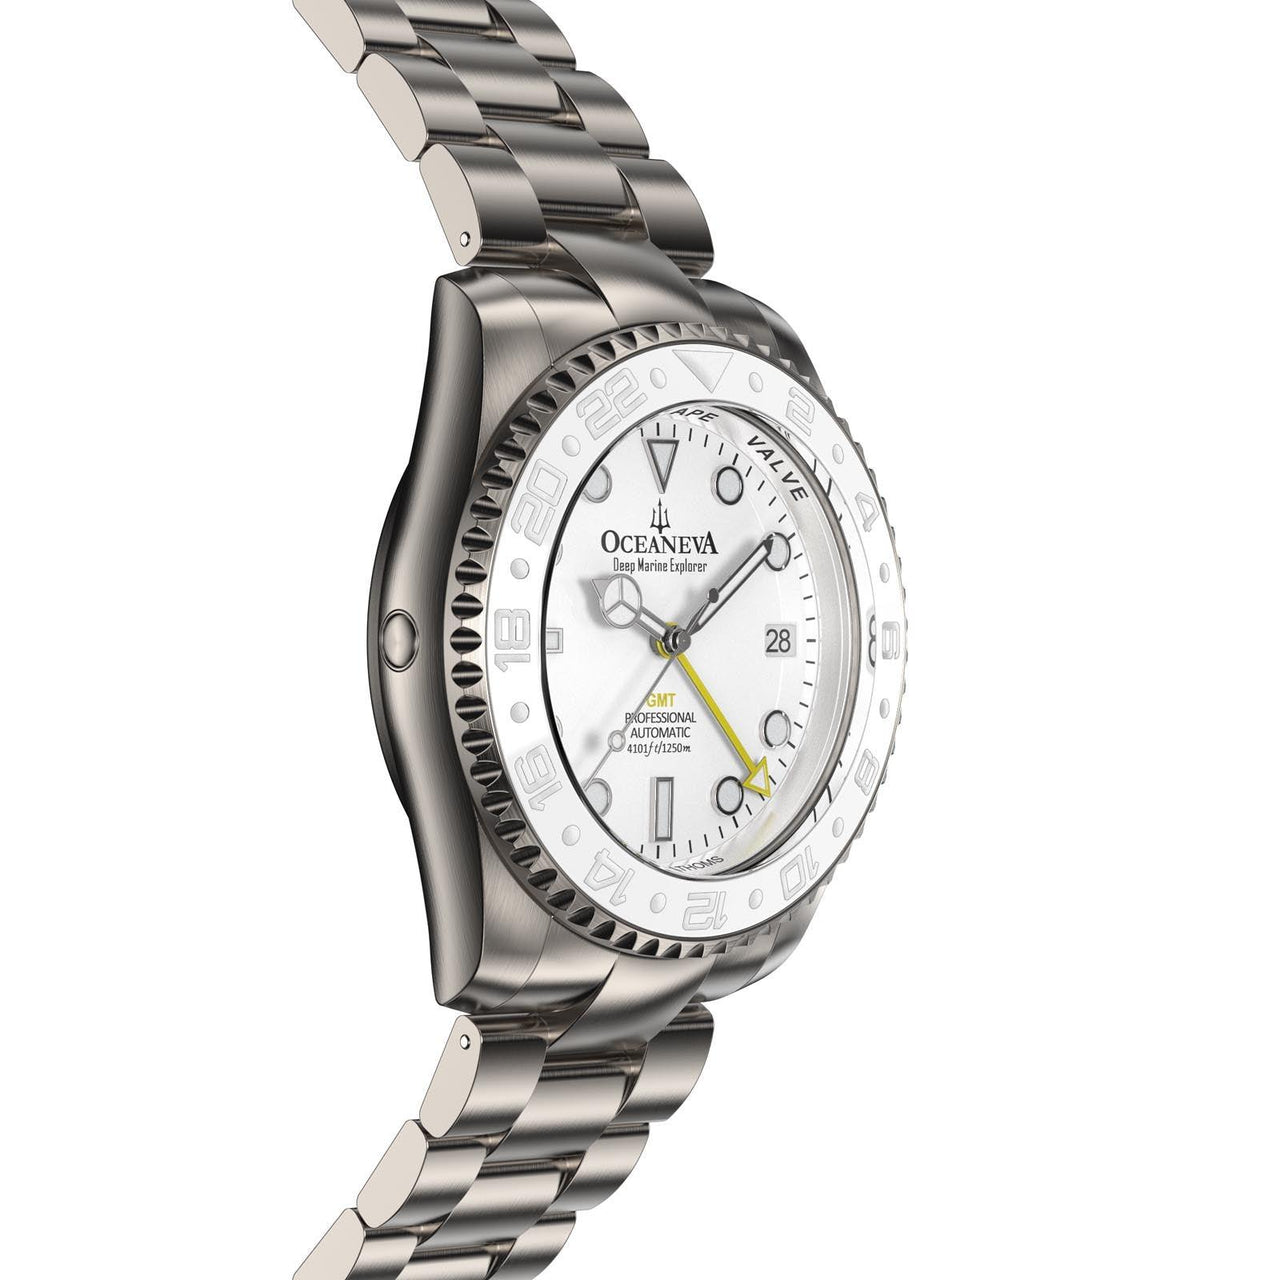 Elegant Oceaneva Titanium GMT Automatic Watch with Helium Escape Valve detail